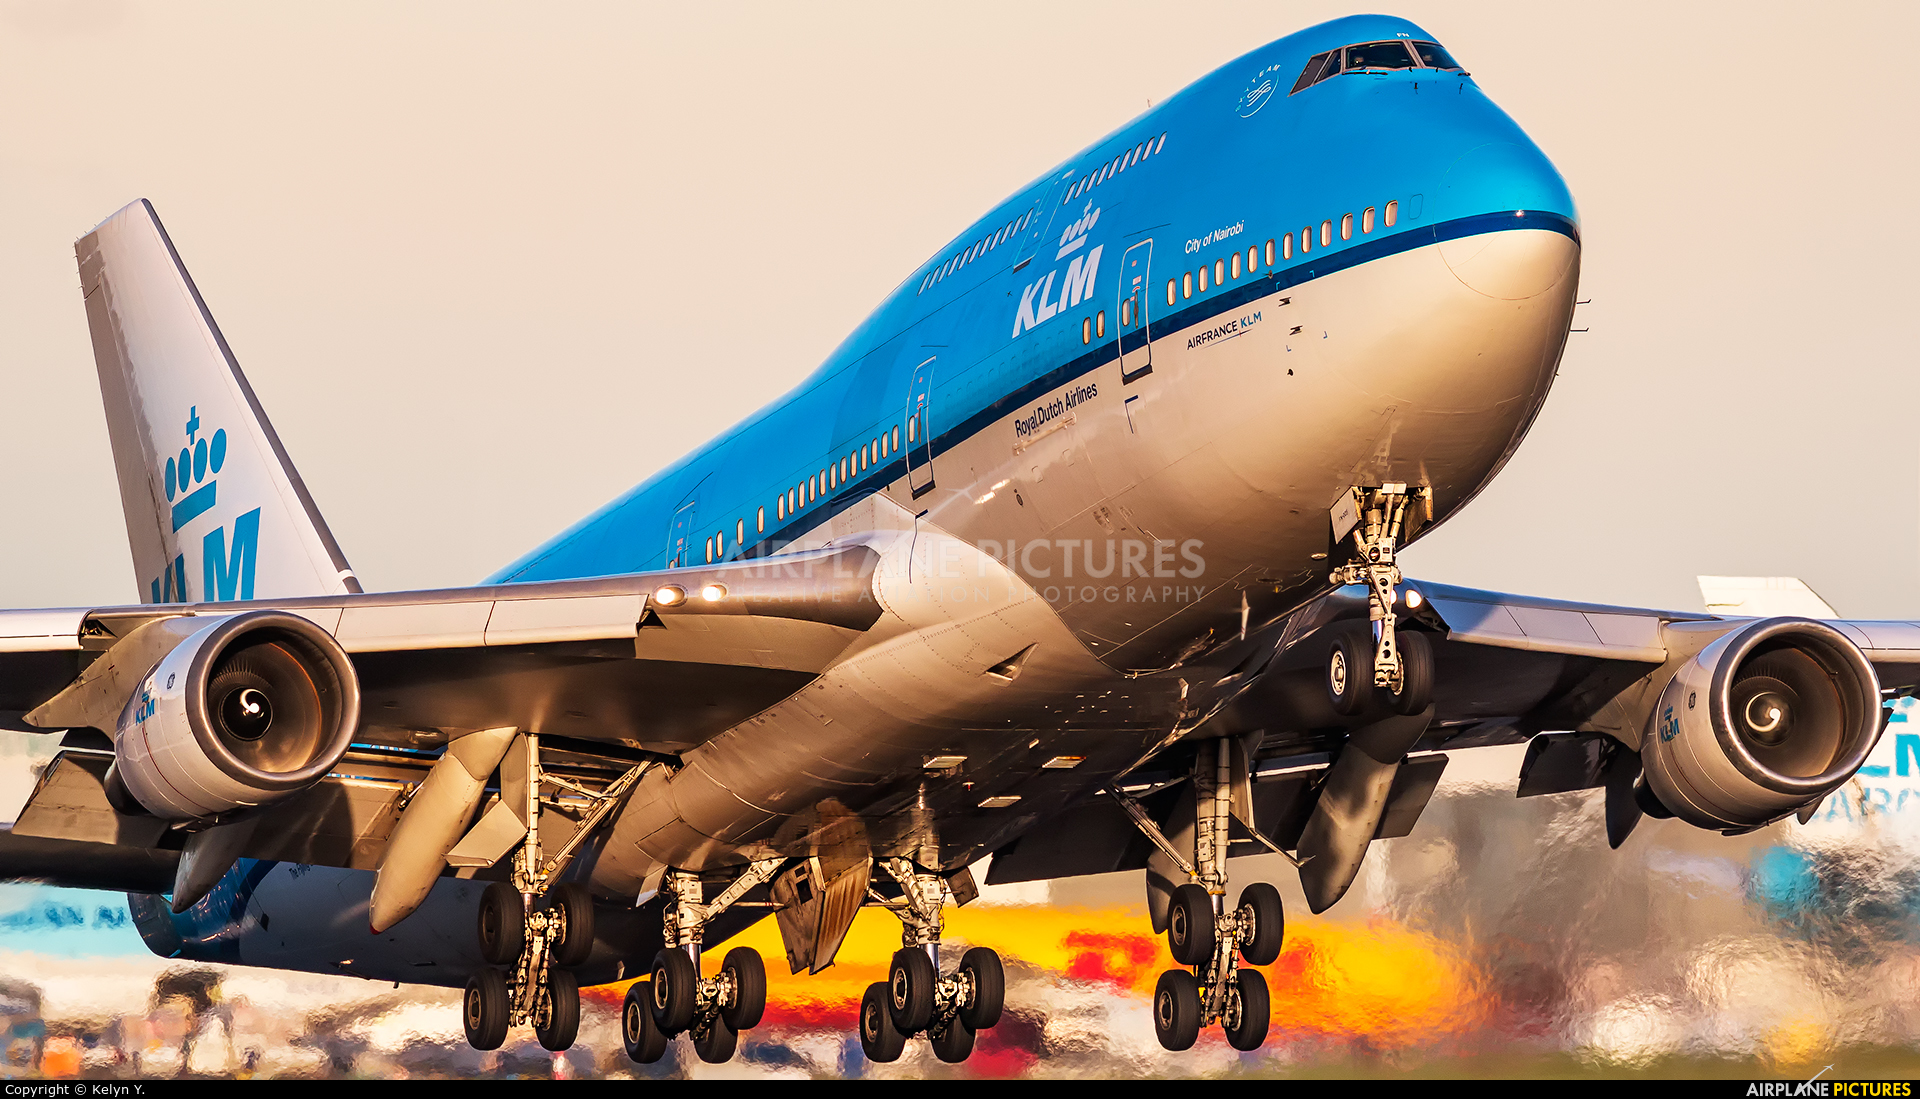 KLM PH-BFN aircraft at Amsterdam - Schiphol